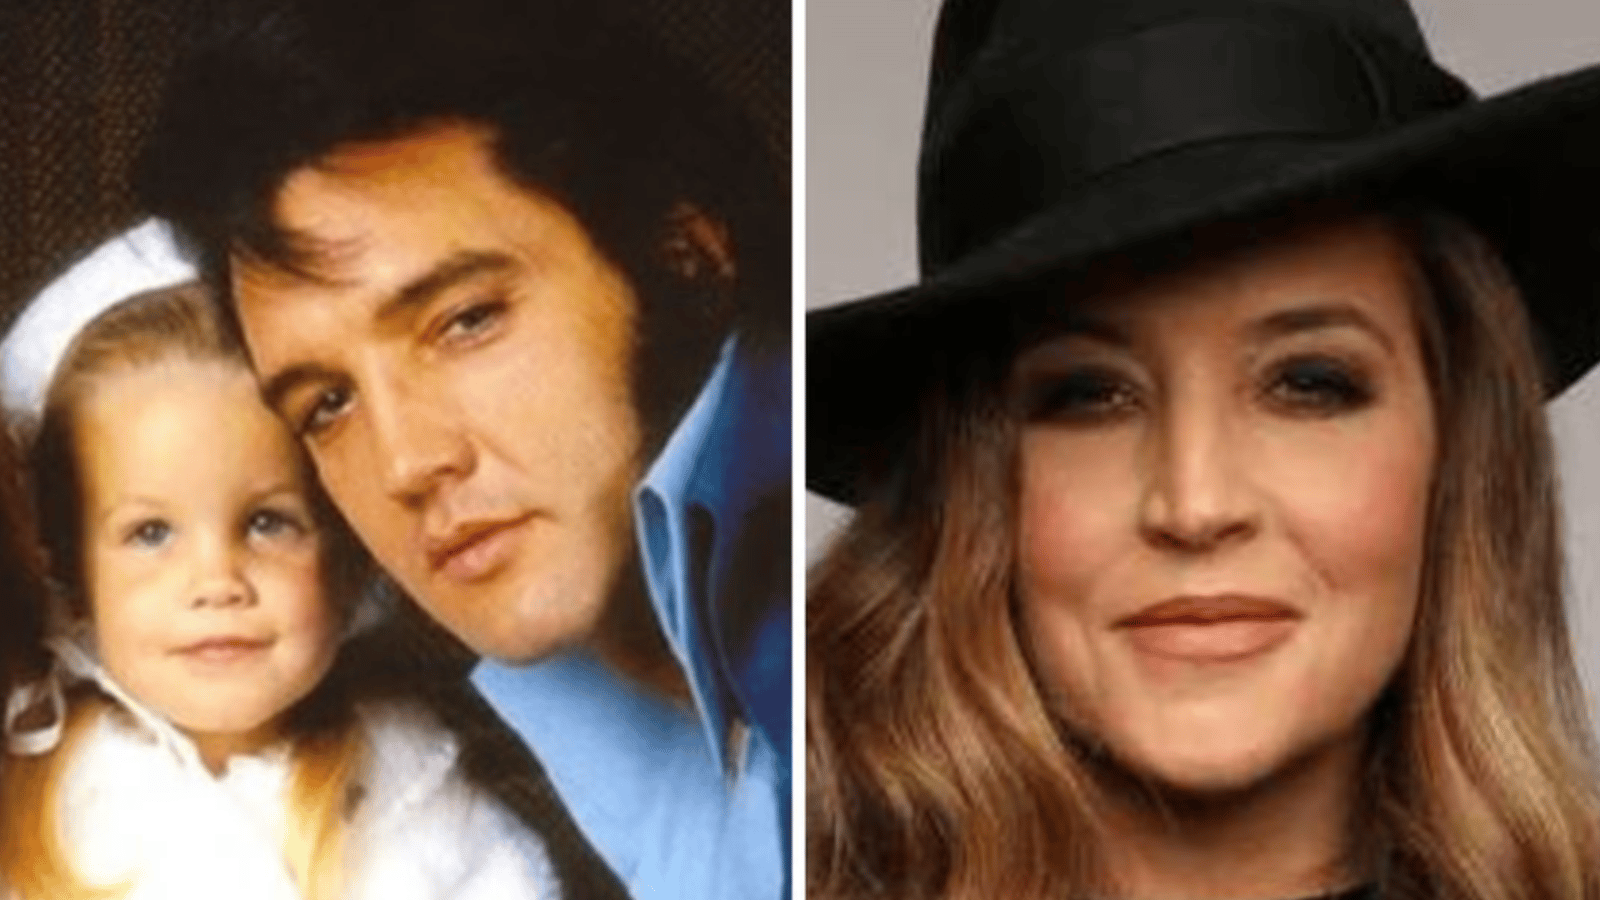 La fille d'Elvis Presley perd la vie à 54 ans